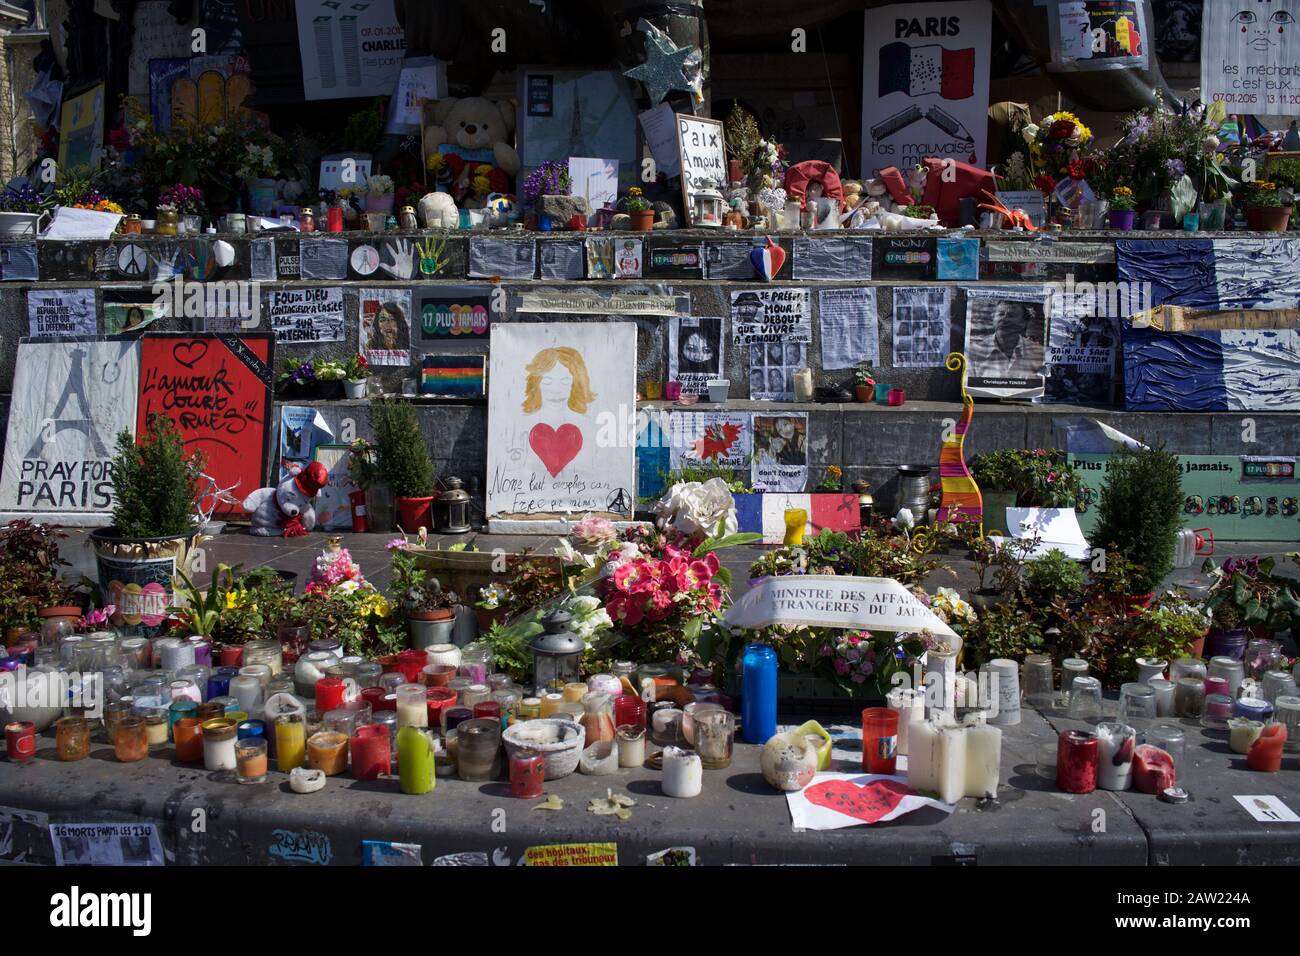 Mensajes escritos a mano, velas y flores en los escalones de la estatua de Marianne, después de los ataques terroristas de París, Place de la République, París, Francia - Abril de 2016 Foto de stock